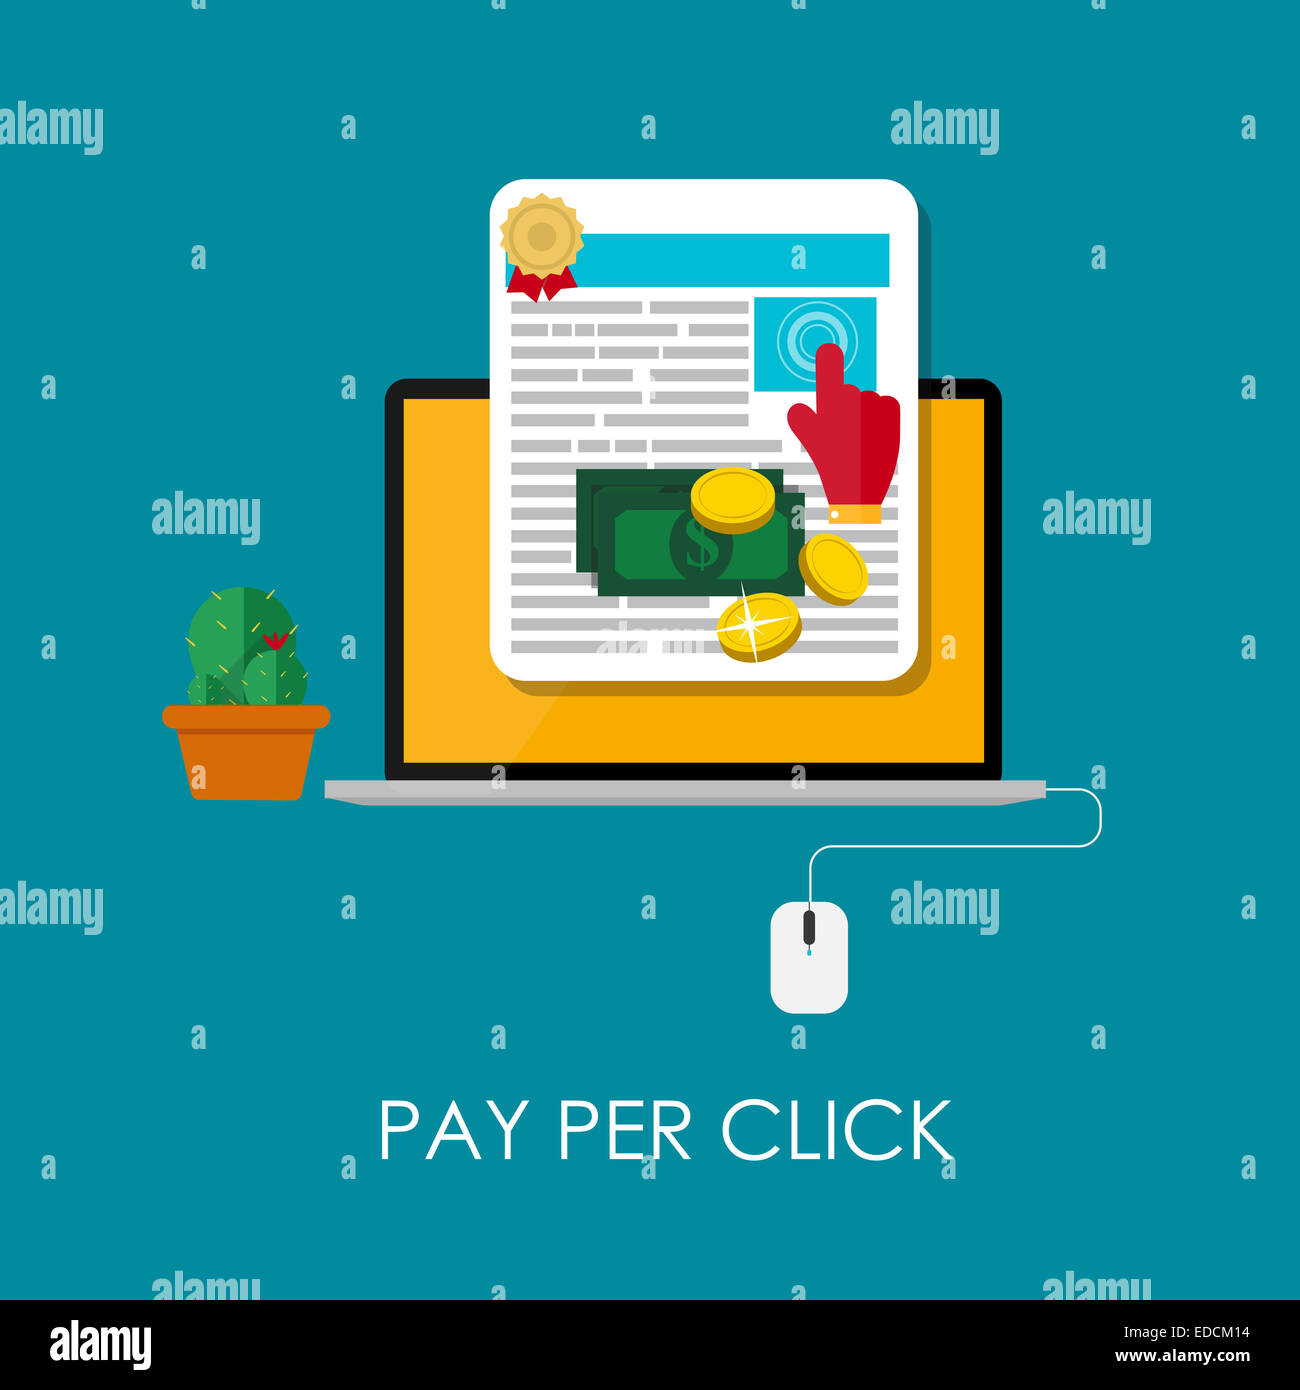 Pay Per Click concetto piatta per il Web Marketing. Illustrazione Vettoriale Foto Stock